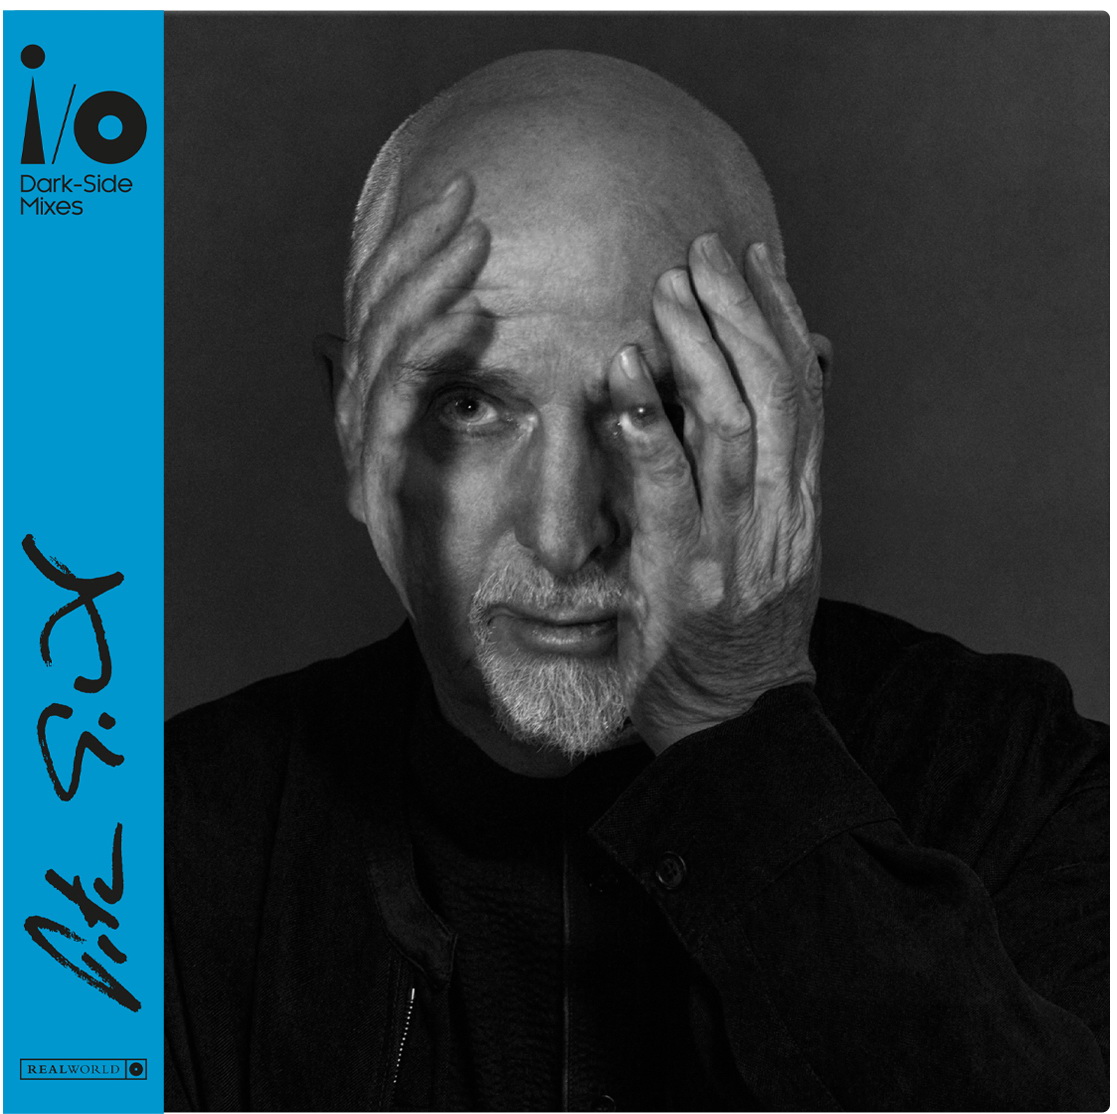 Vinile Peter Gabriel - Dark-Side Mixes 2 Lp NUOVO SIGILLATO EDIZIONE DEL SUBITO DISPONIBILE